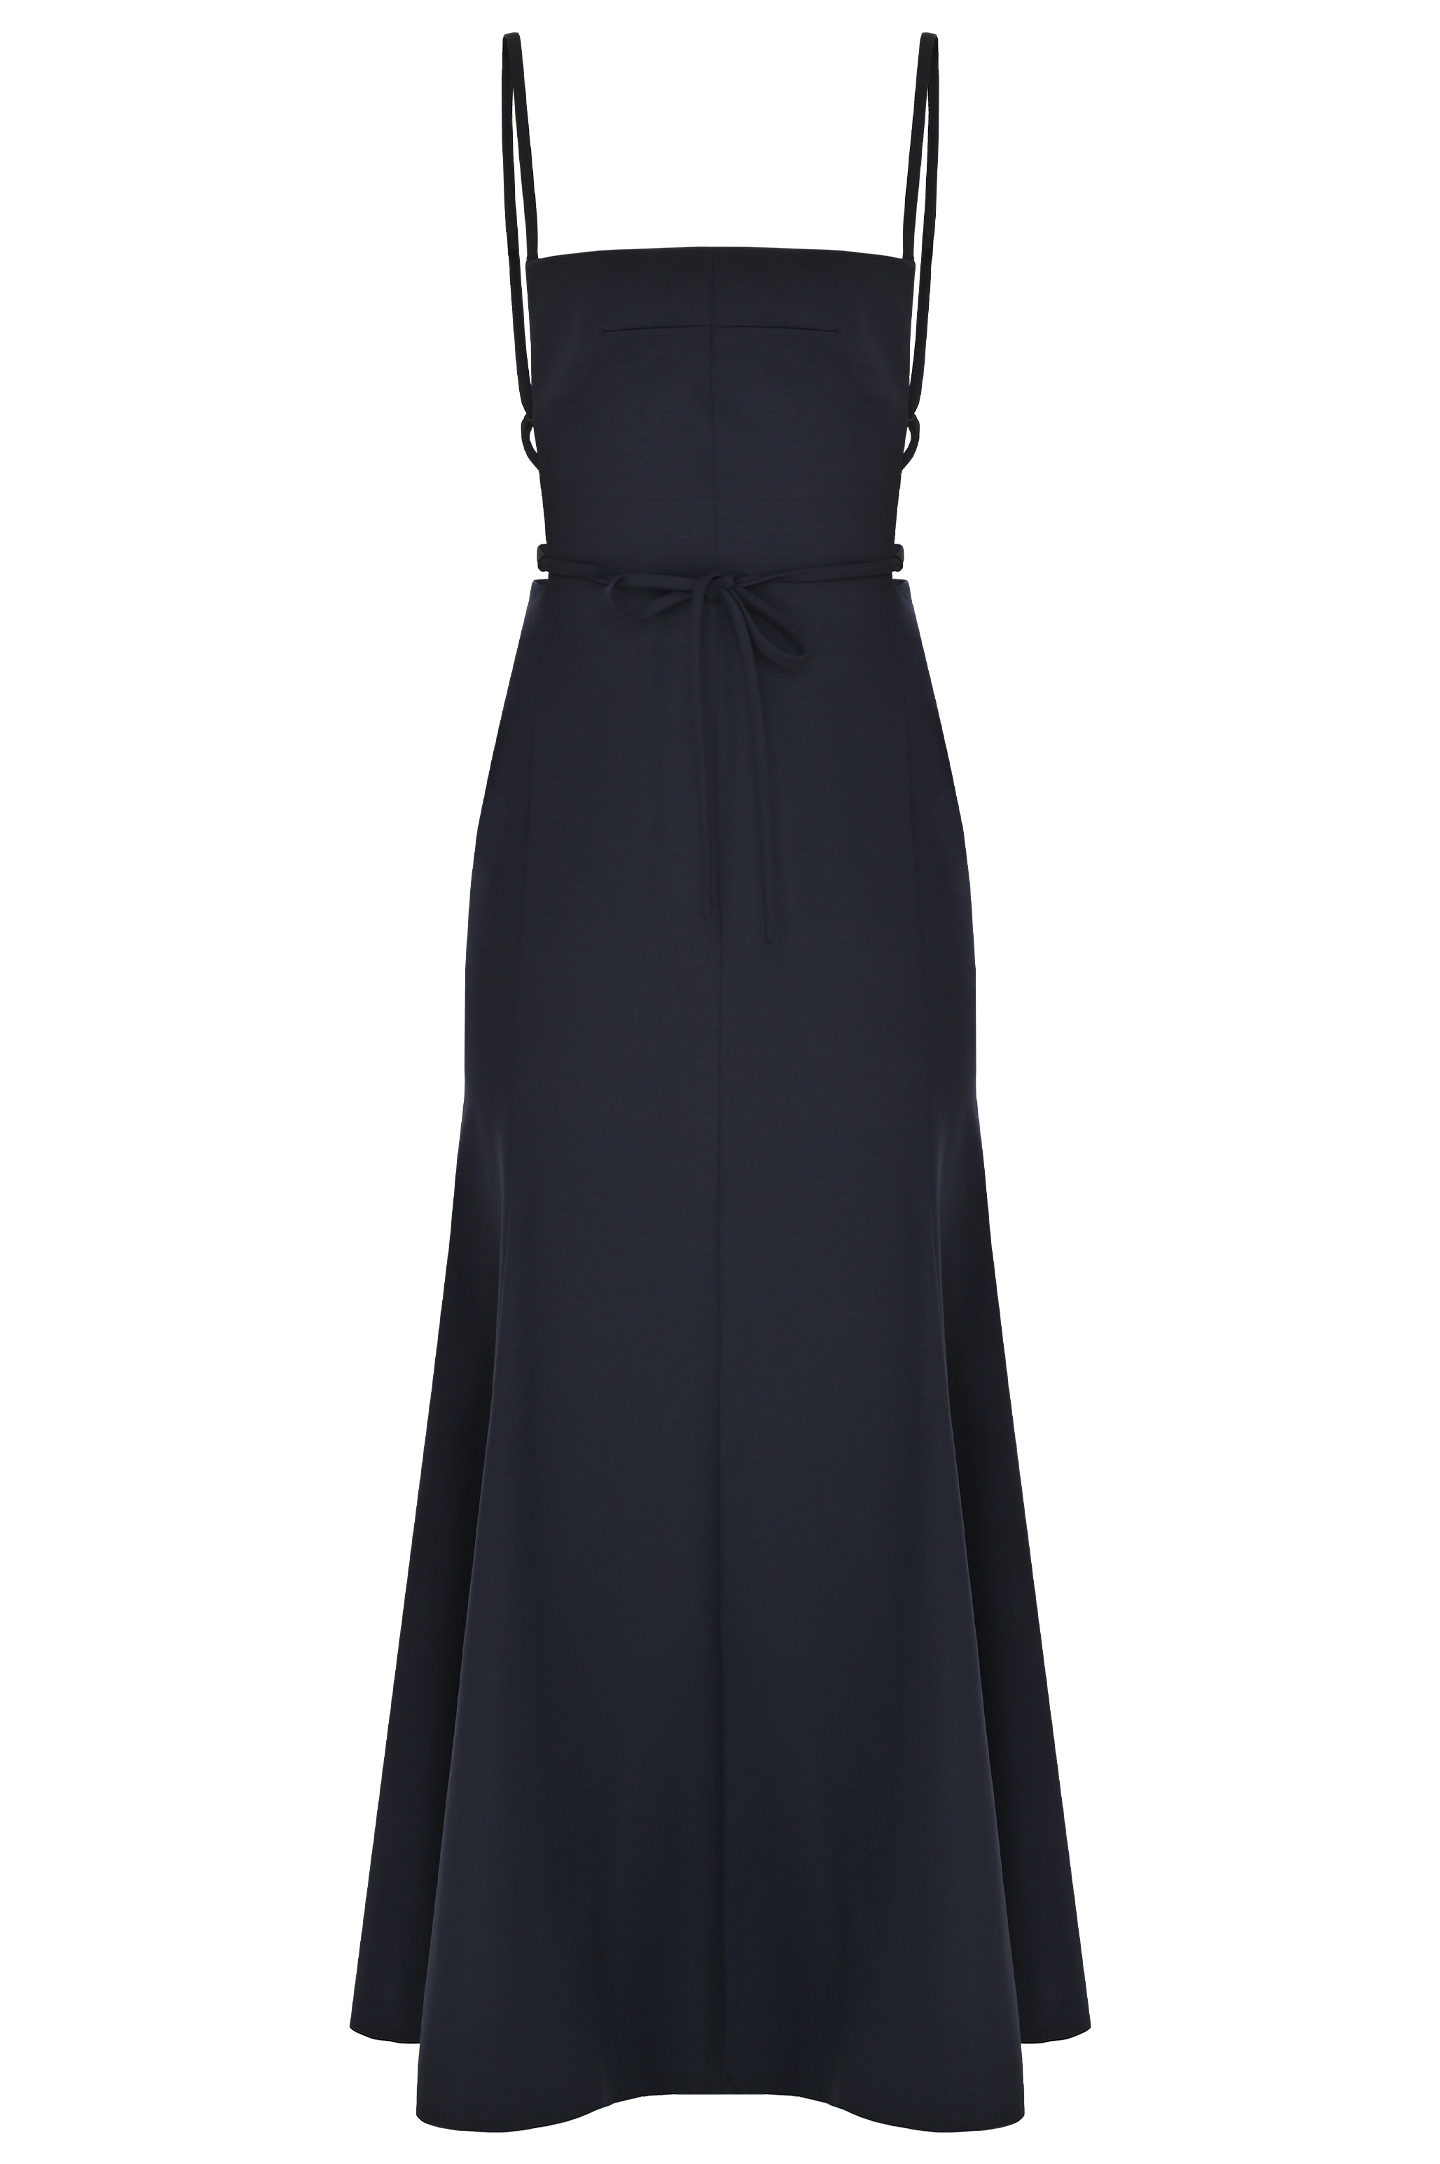 Платье с открытой спиной PHILOSOPHY DI LORENZO SERAFINI A0424 727, цвет: Темно-синий, Женский